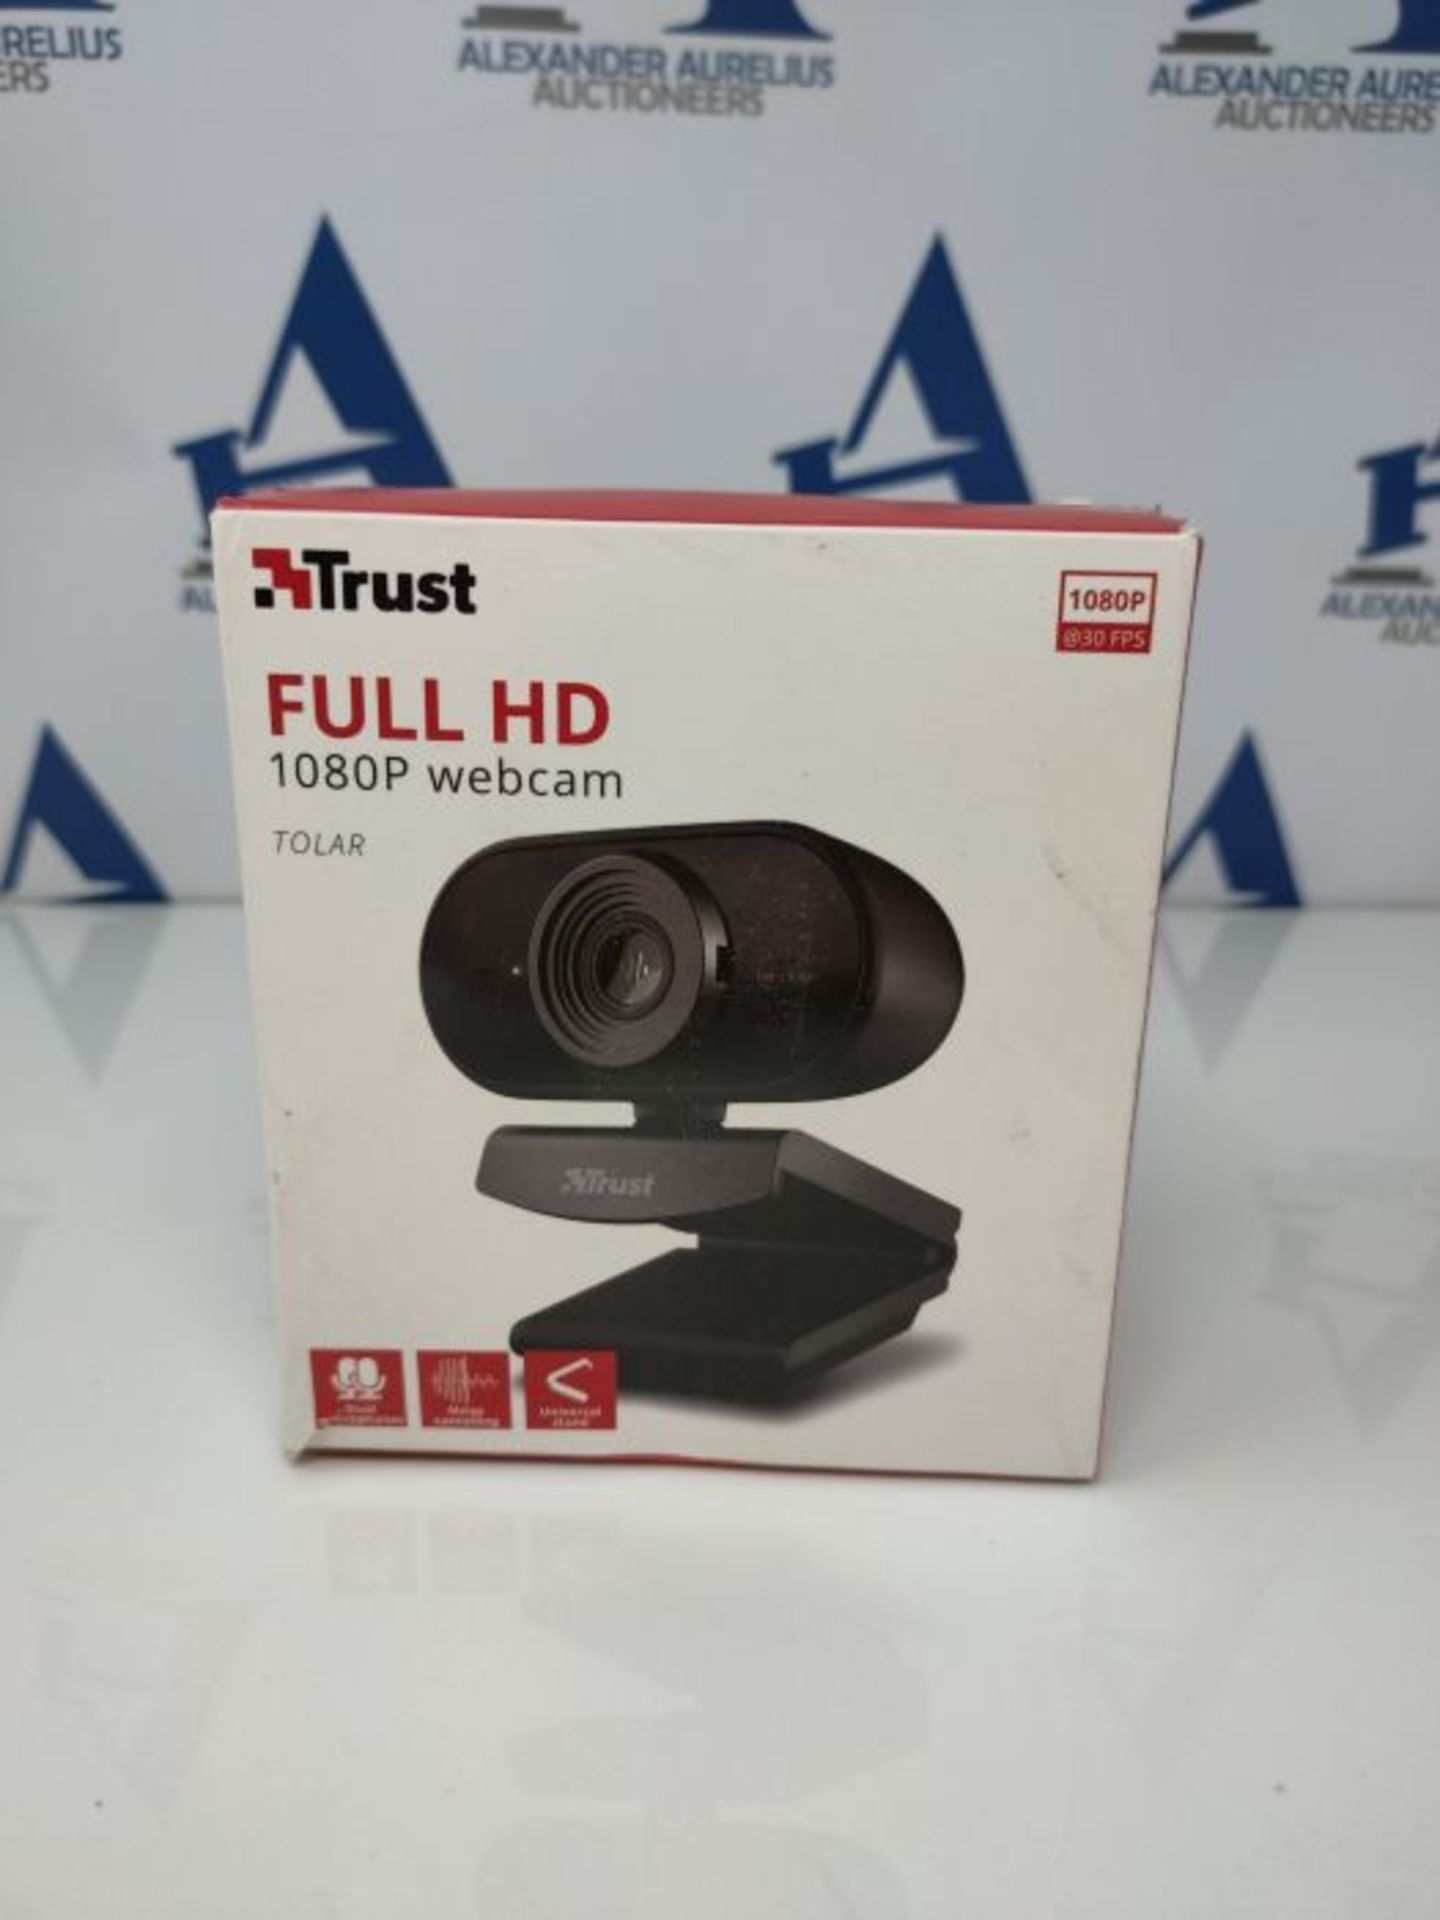 Trust Tolar Full HD 1080p Webcam PC con Microfono, 2 Microfoni Integrati, Fuoco Fisso, - Image 2 of 3